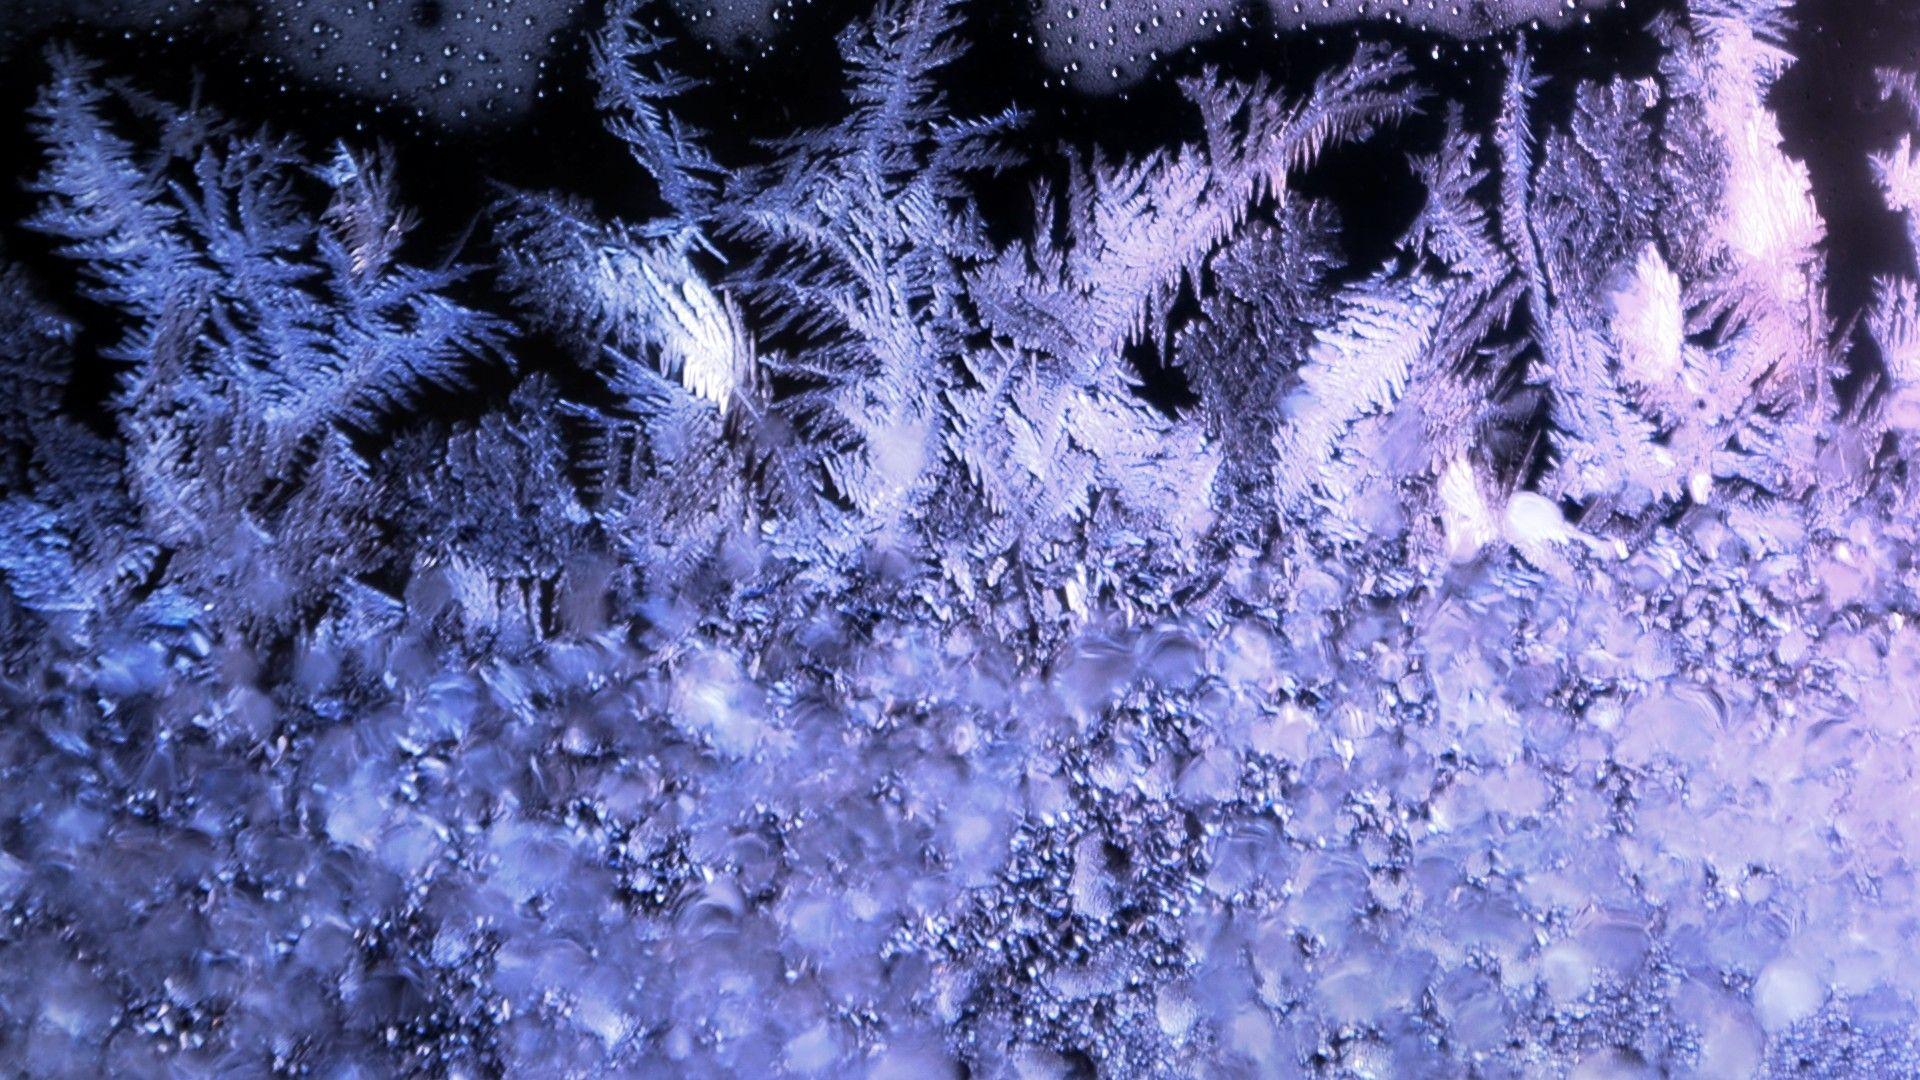 Ice frozen textures frost wallpaper. PC